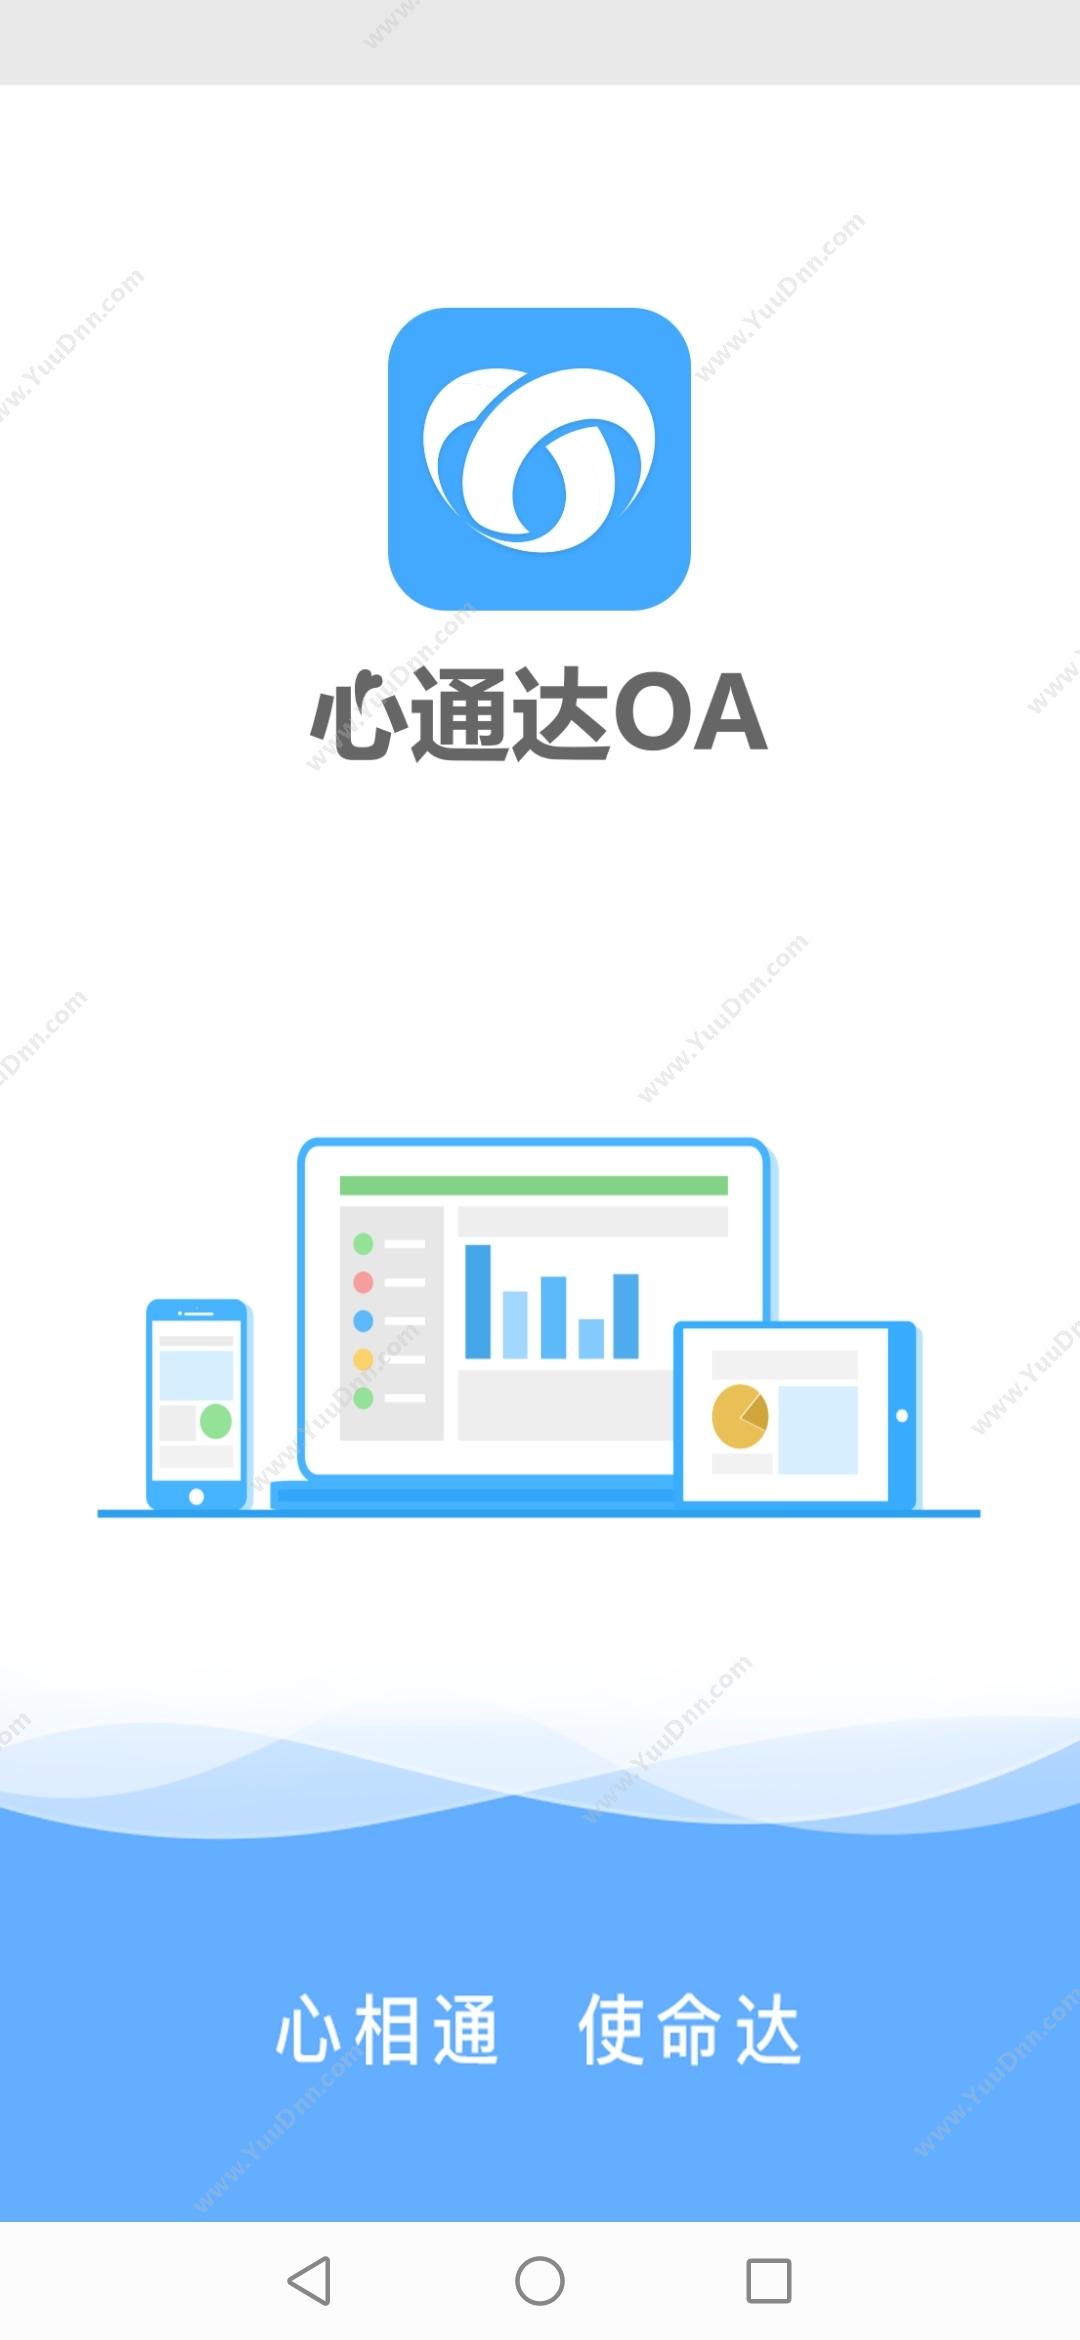 北京高速波软件有限公司 心通达OA智慧办公系统 APP 协同OA